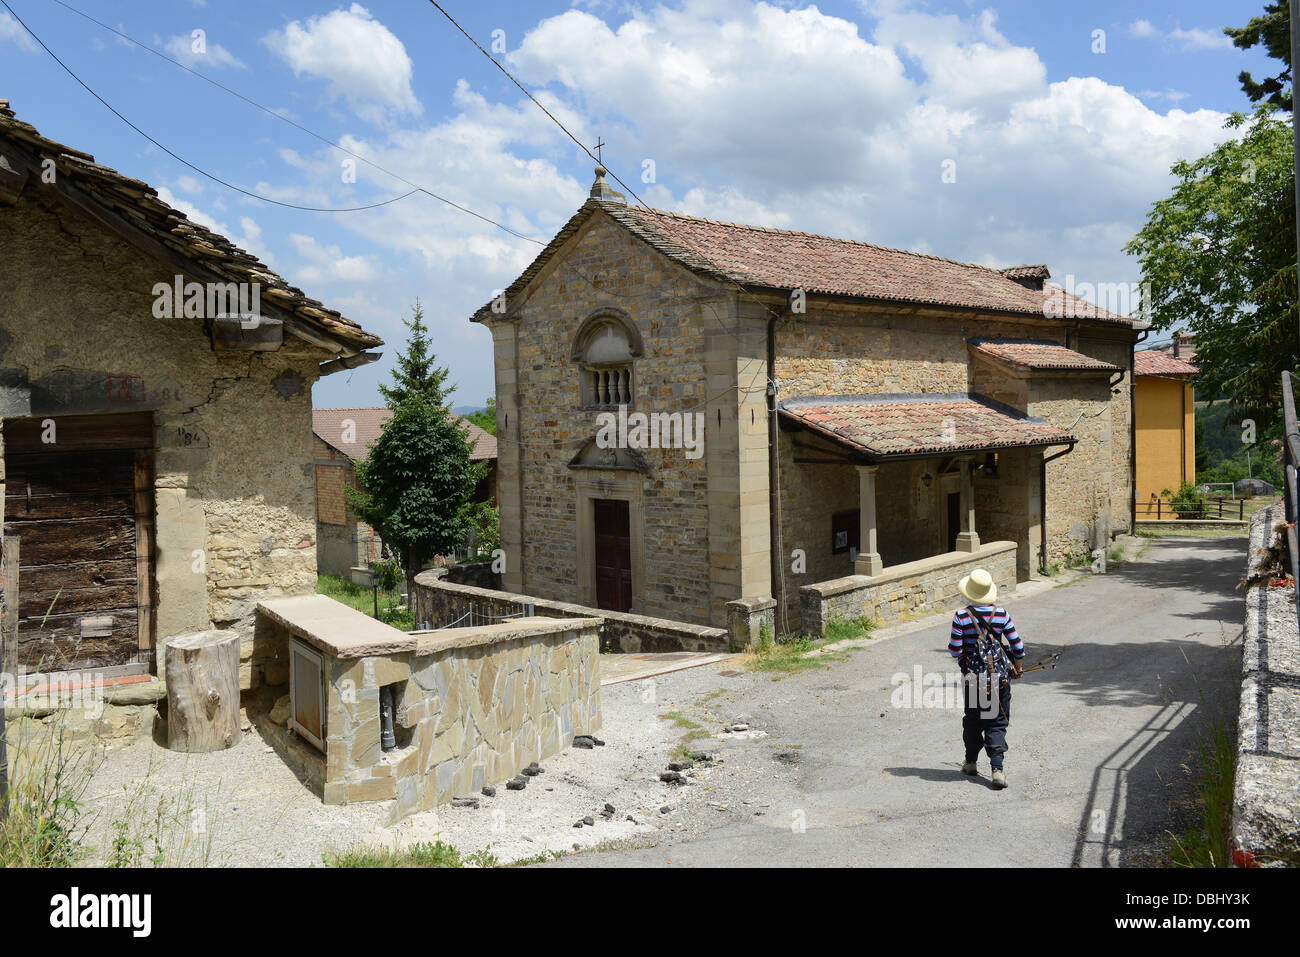 Manno ein italienisches Dorf in Reggio Emilia Hügeln in der italienischen Region Emilia-Romagna Stockfoto